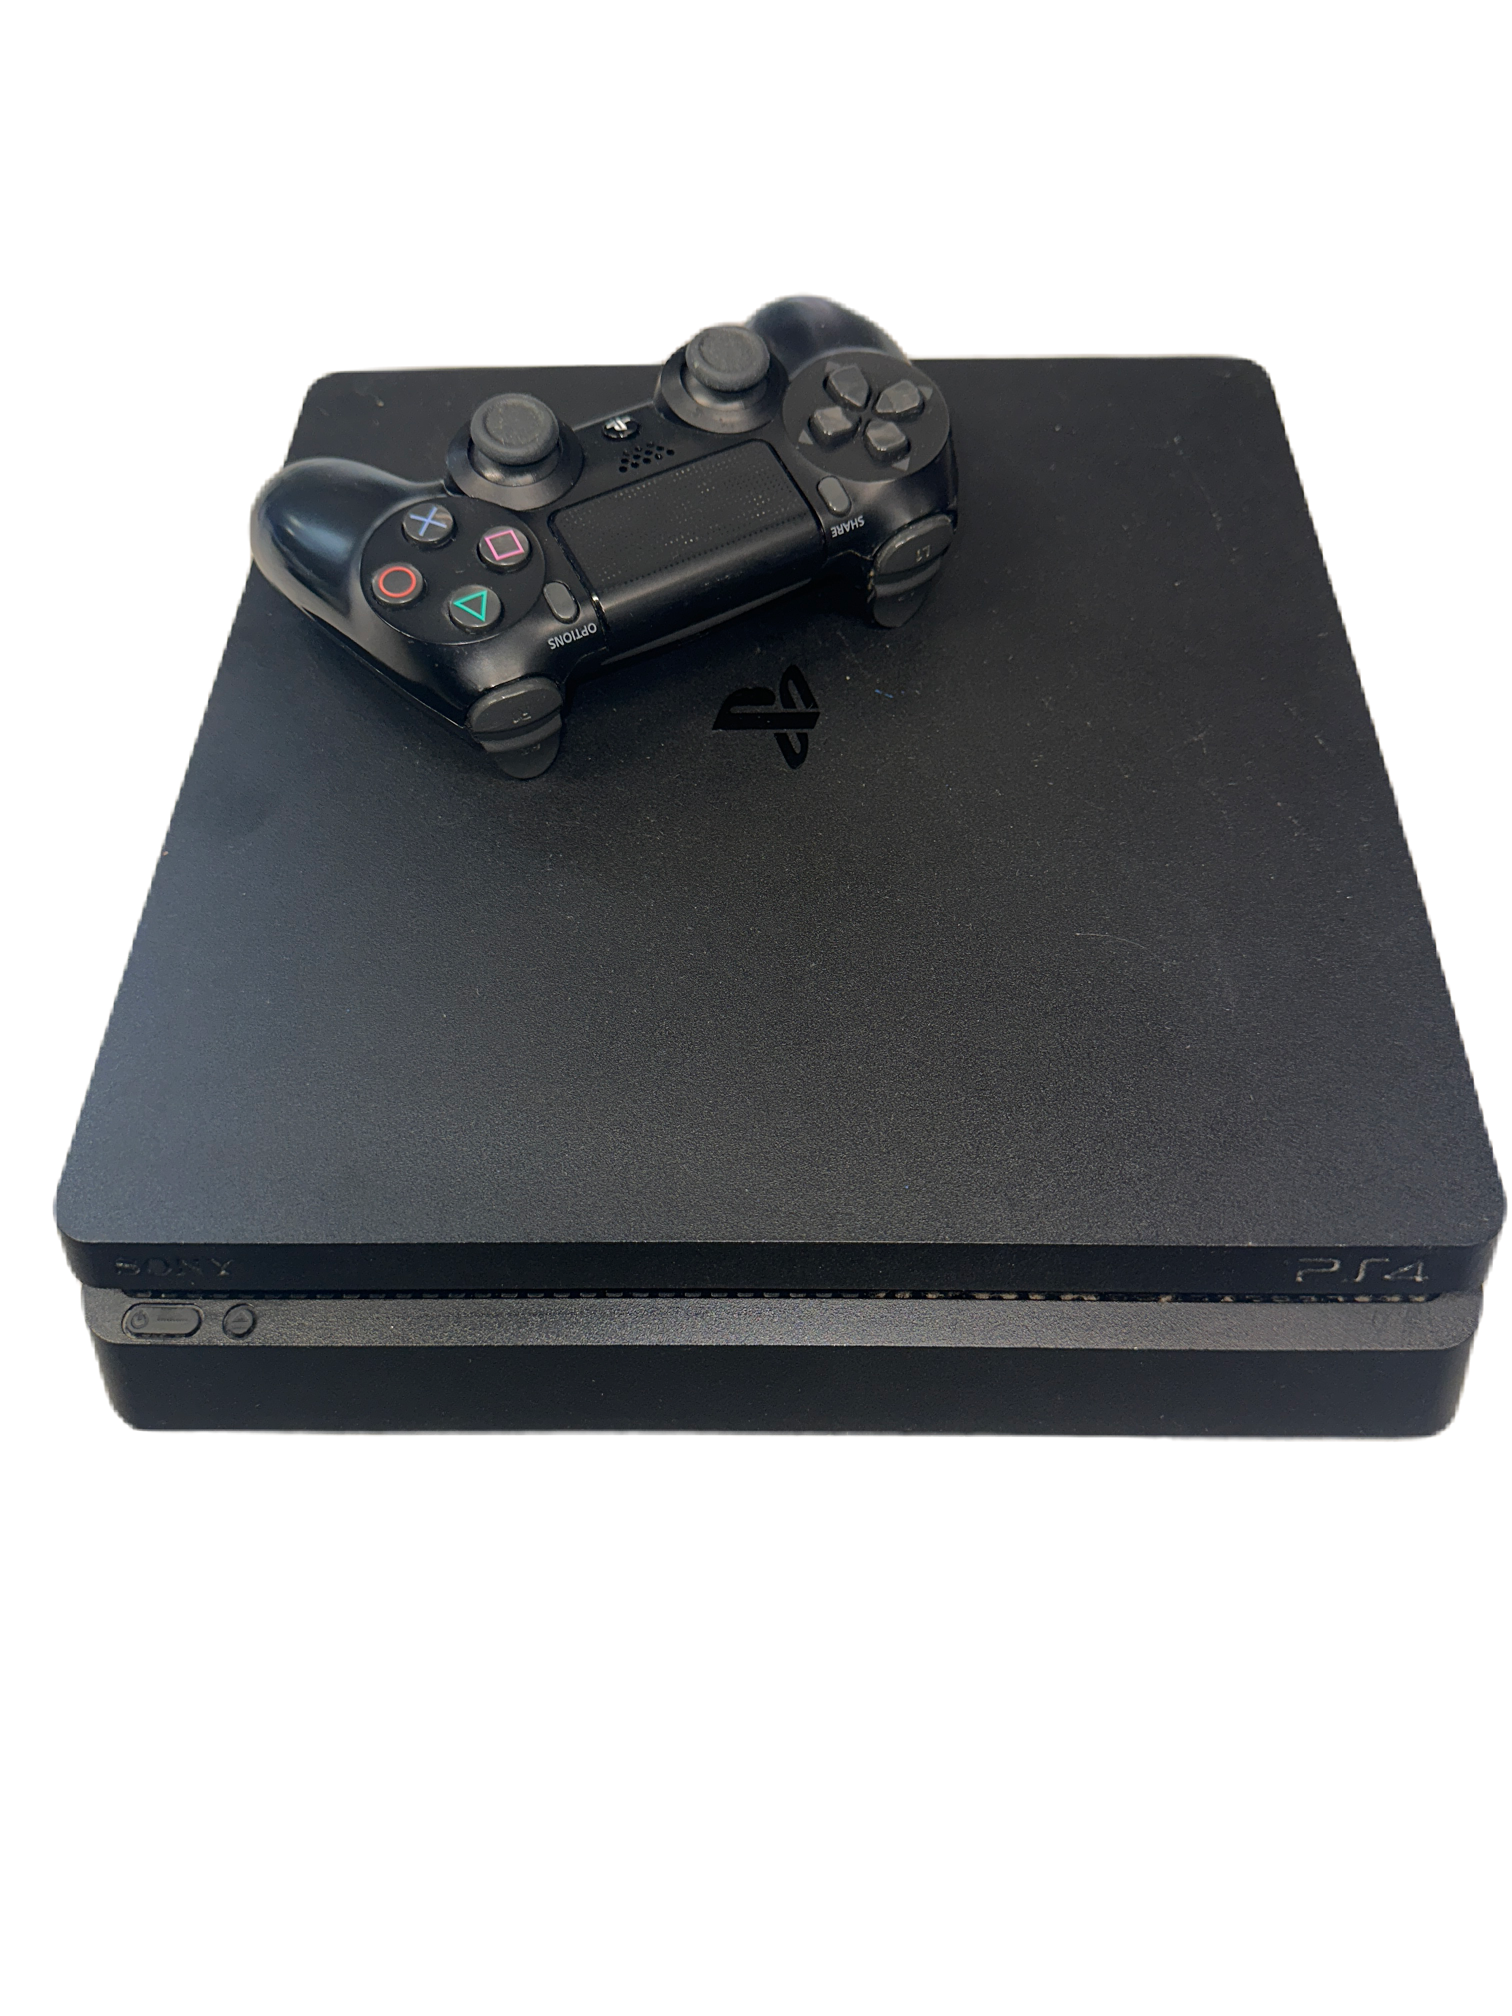 PlayStation 4 Slim 500GB Includes Controller, b